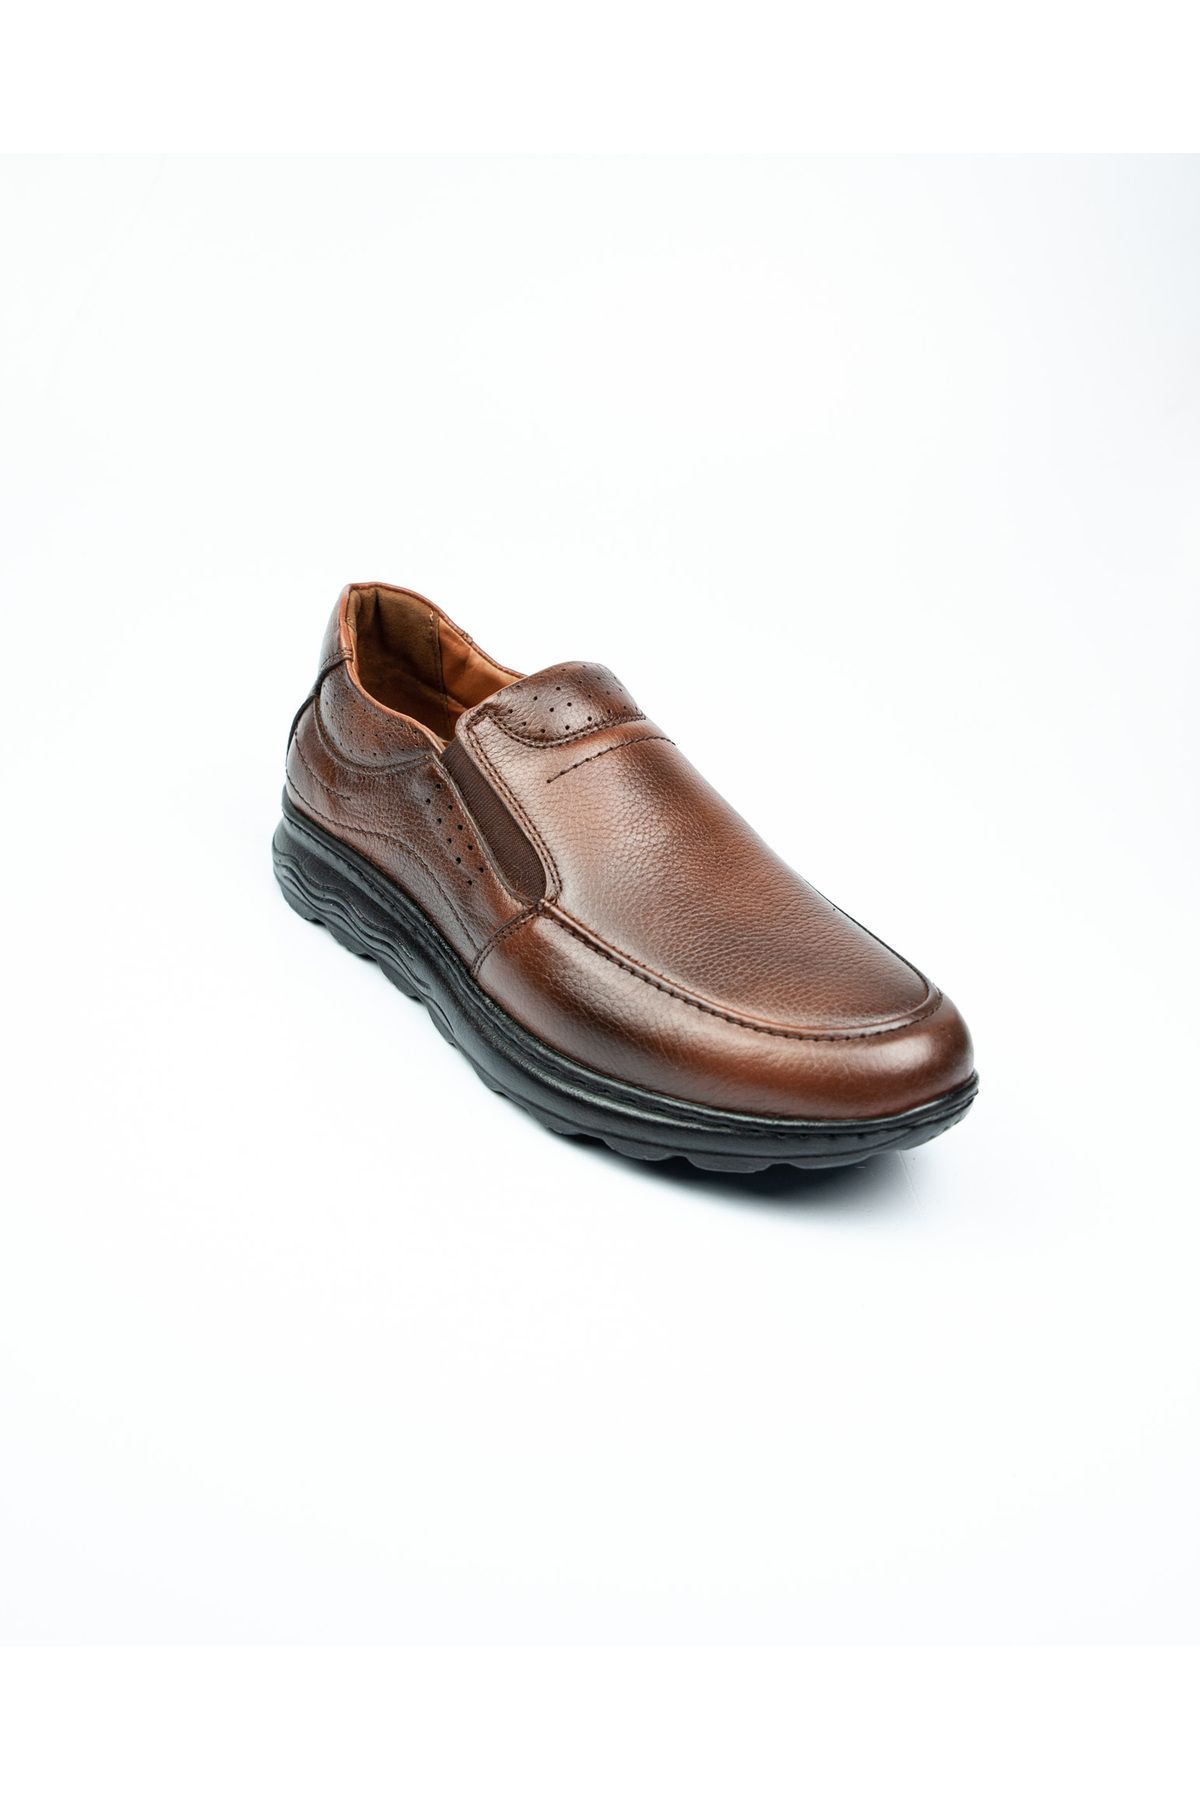 Modesa 227 Mokasen Kahverengi Deri Erkek Günlük Ayakkabı